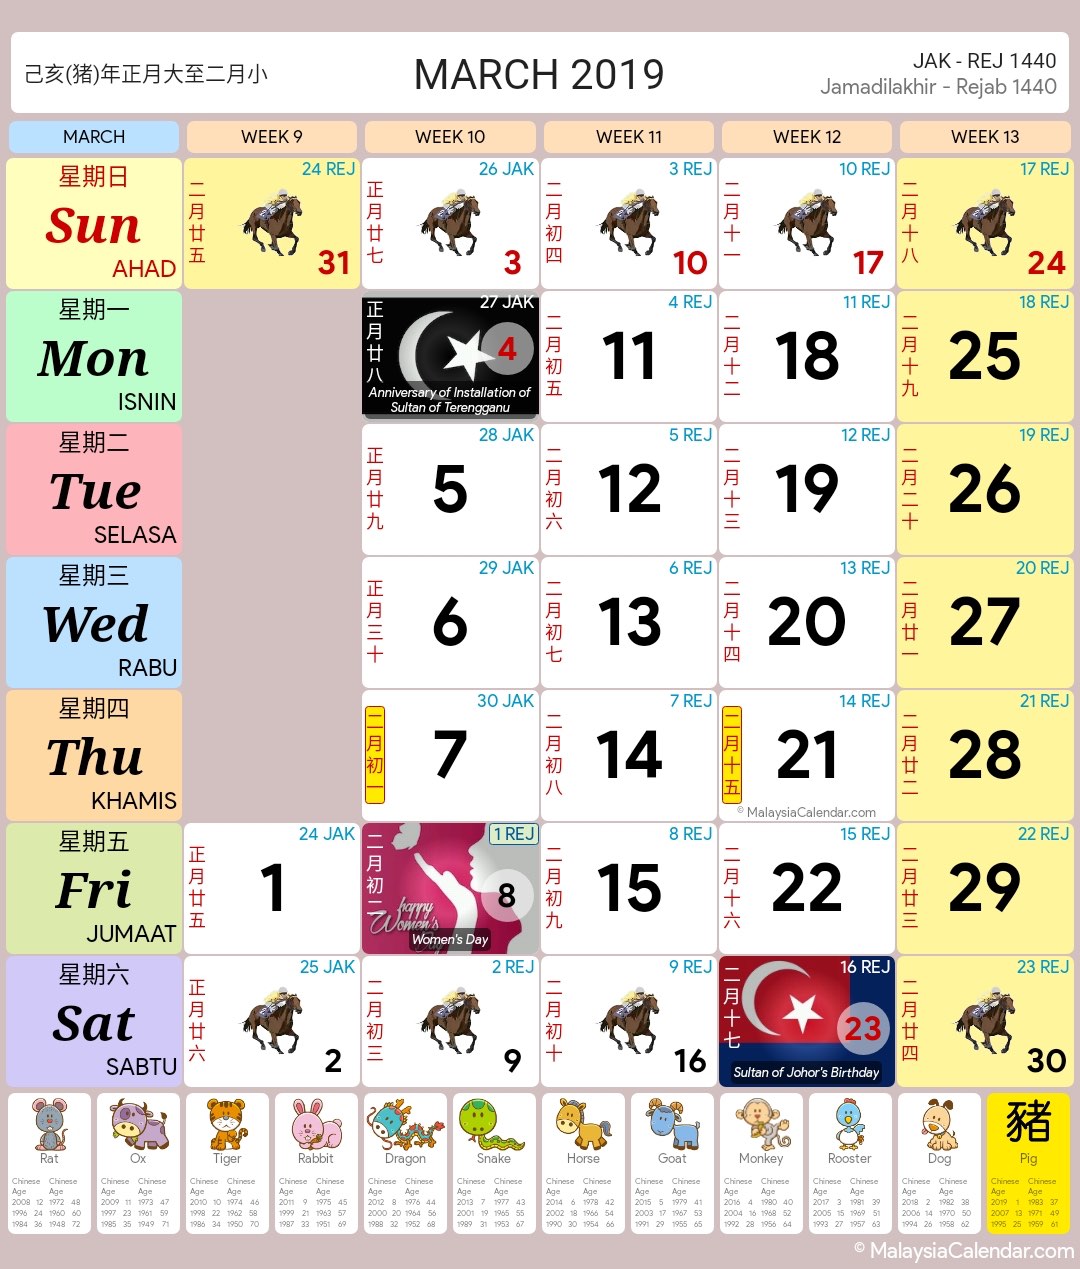 Kalendar Malaysia - Blog